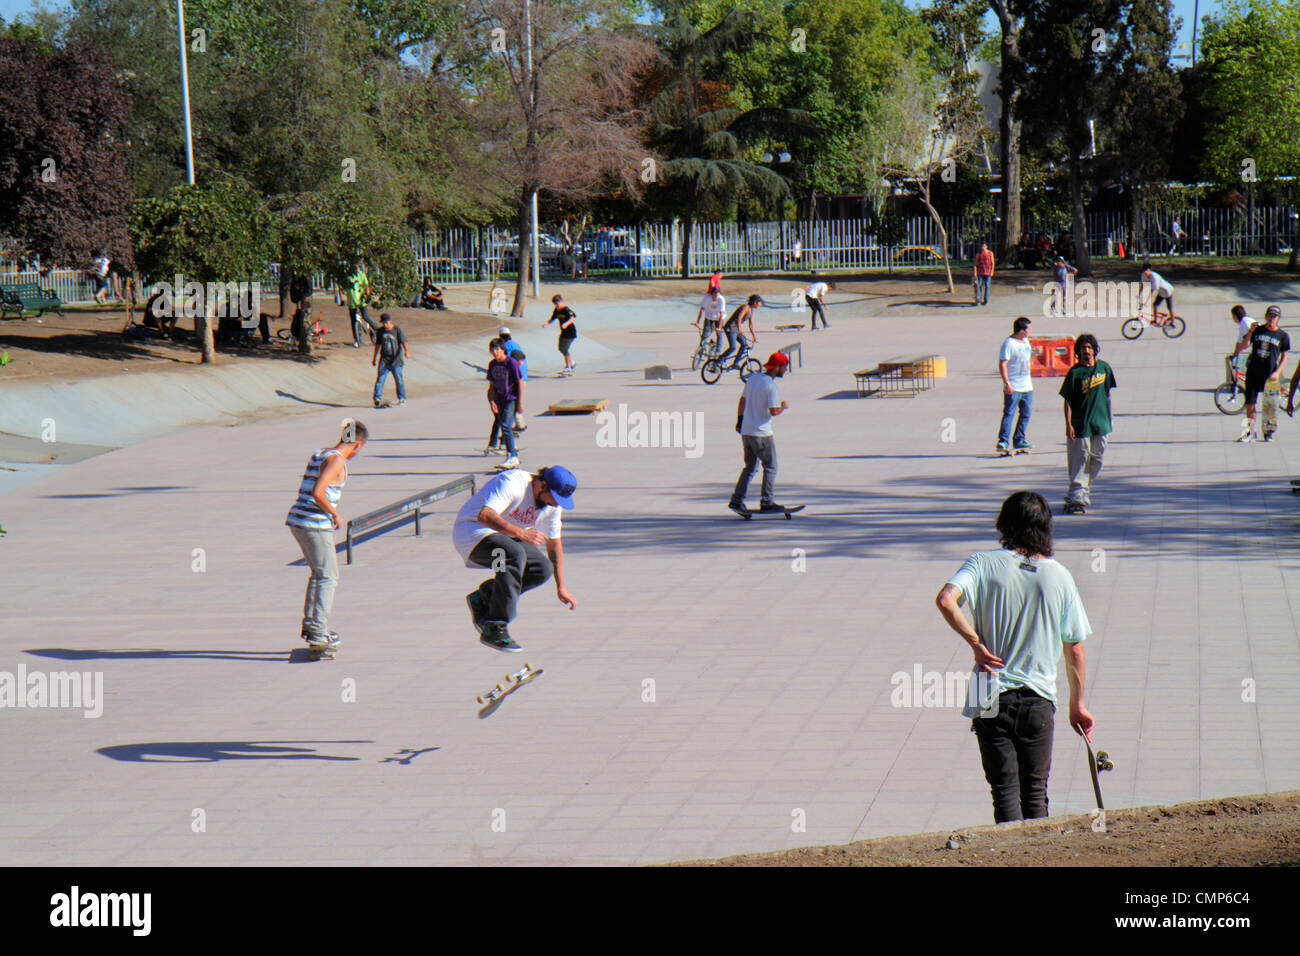 Santiago Chile,Providencia,quartier,Parque Bustamante,parc public,Skate Park,patinage,skateboard,Hispanic boy garçons,mâle enfant enfants enfants youn Banque D'Images